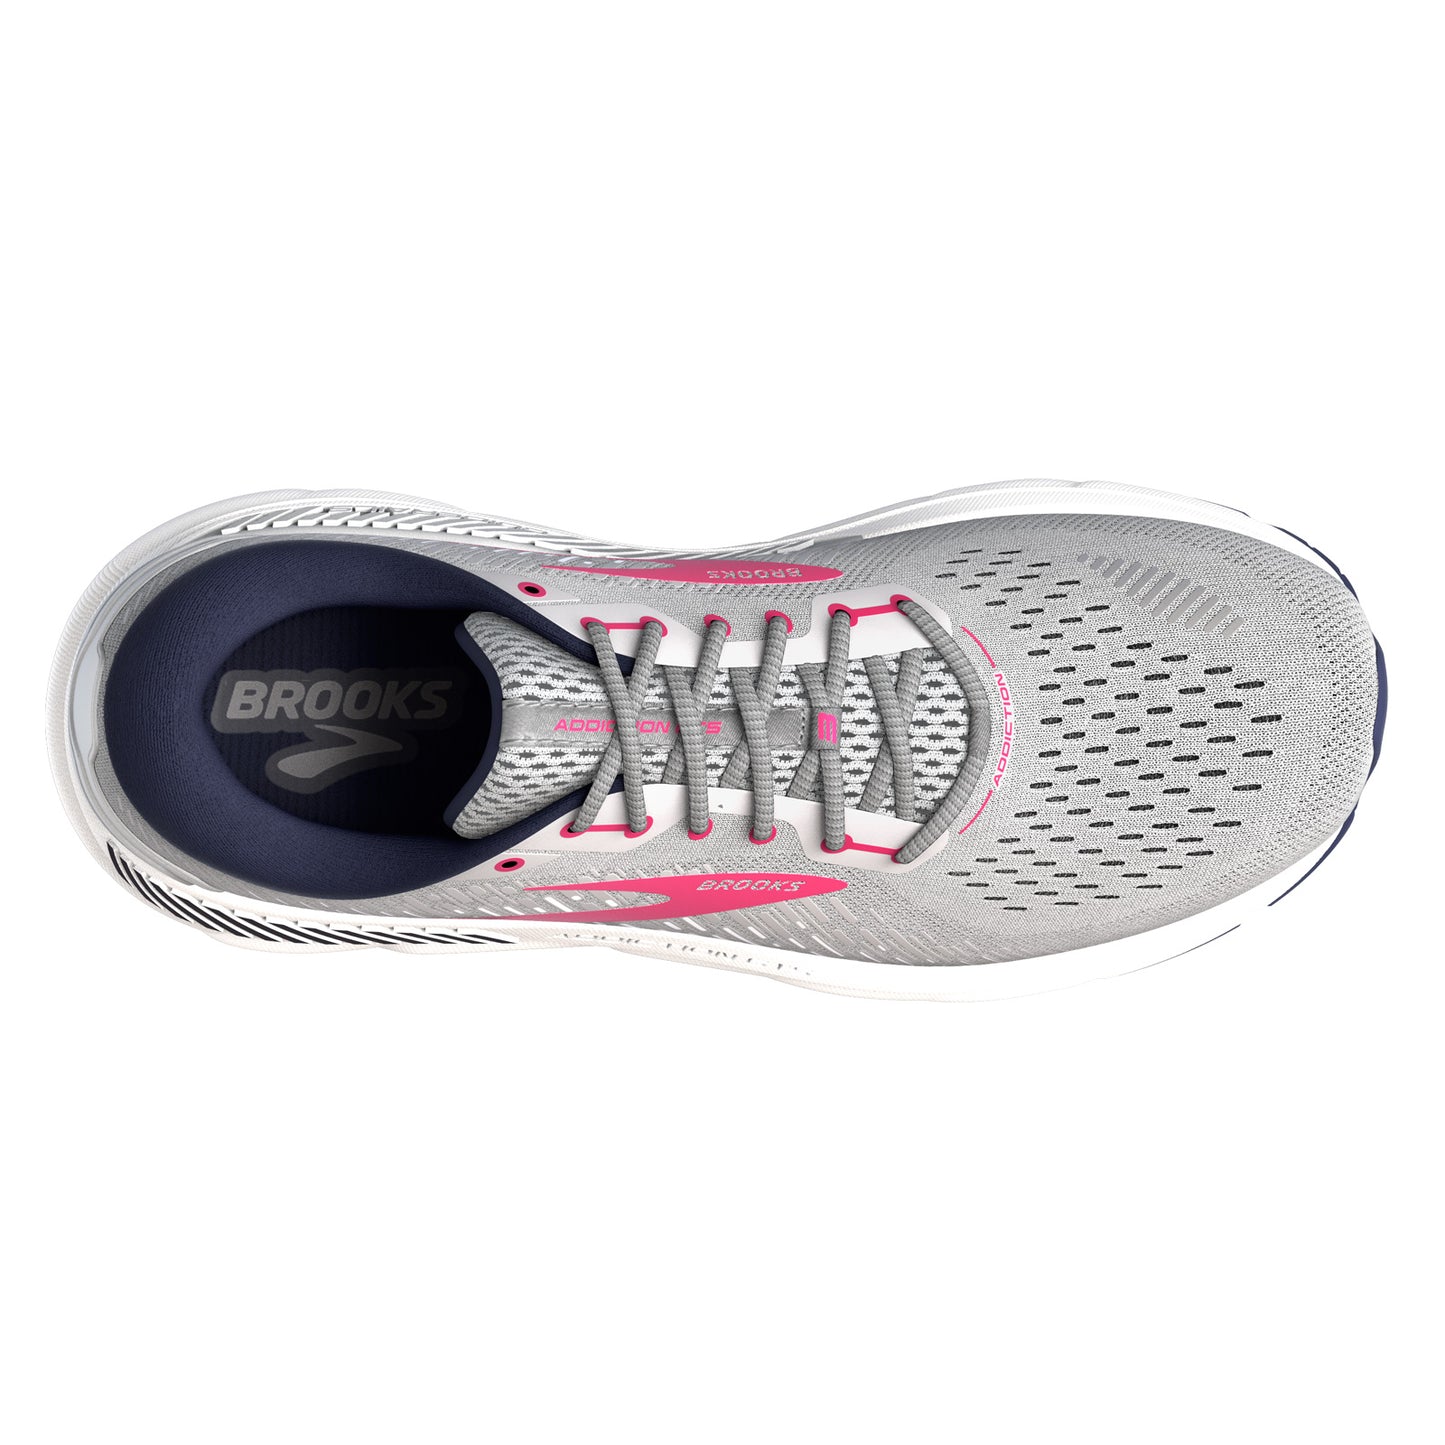 Peltz Shoes  Women's Brooks Addiction GTS 15 Running Shoe - Extra Wide Width Oyster/Rose 120352 2E 054